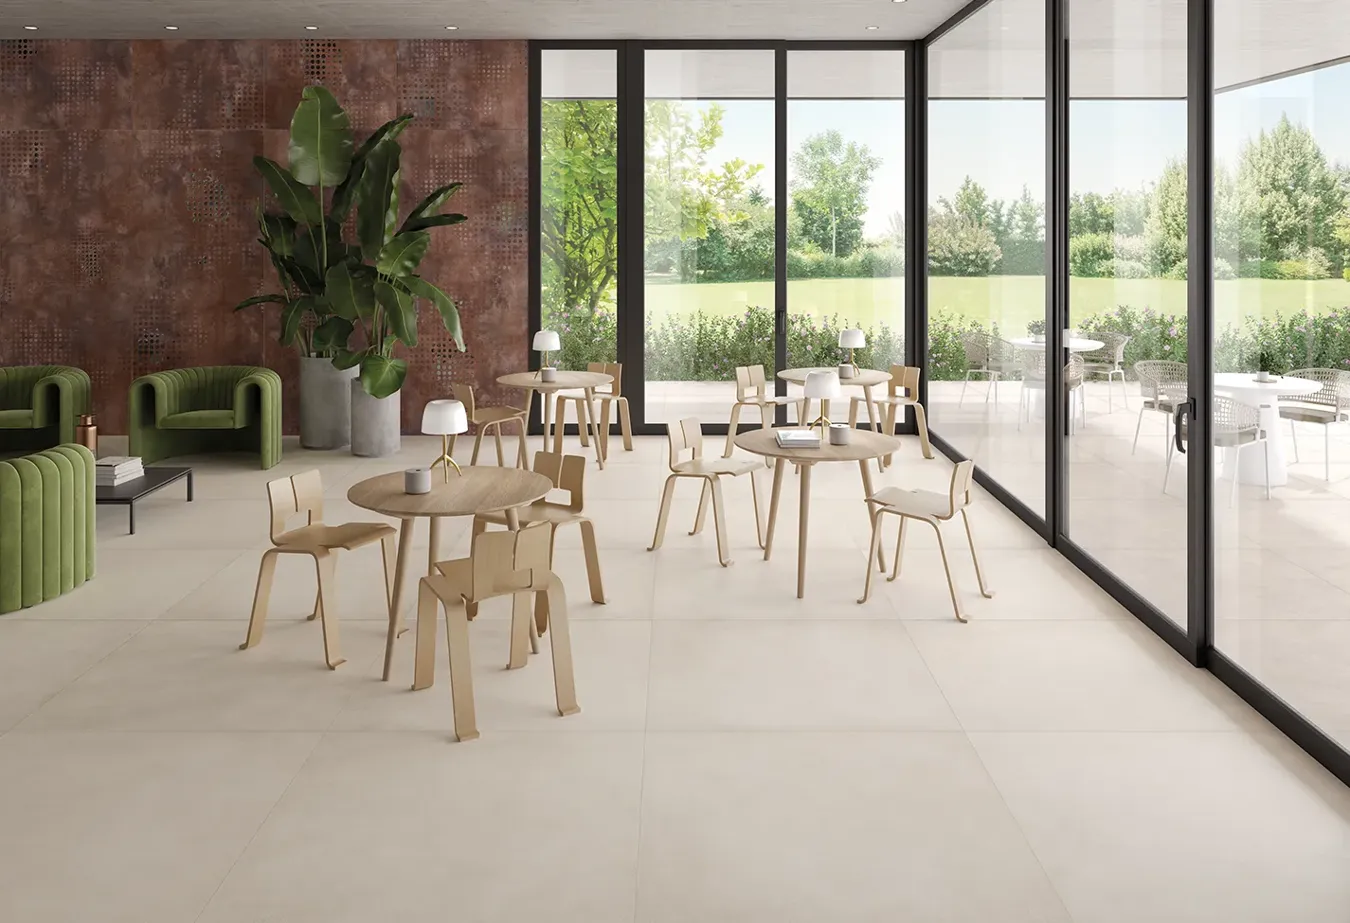 Moderno spazio comune con pavimento in piastrelle beige, arredato con tavoli e sedie in legno chiaro, affacciato su un giardino esterno tramite grandi vetrate che offrono una vista aperta e luminosa.